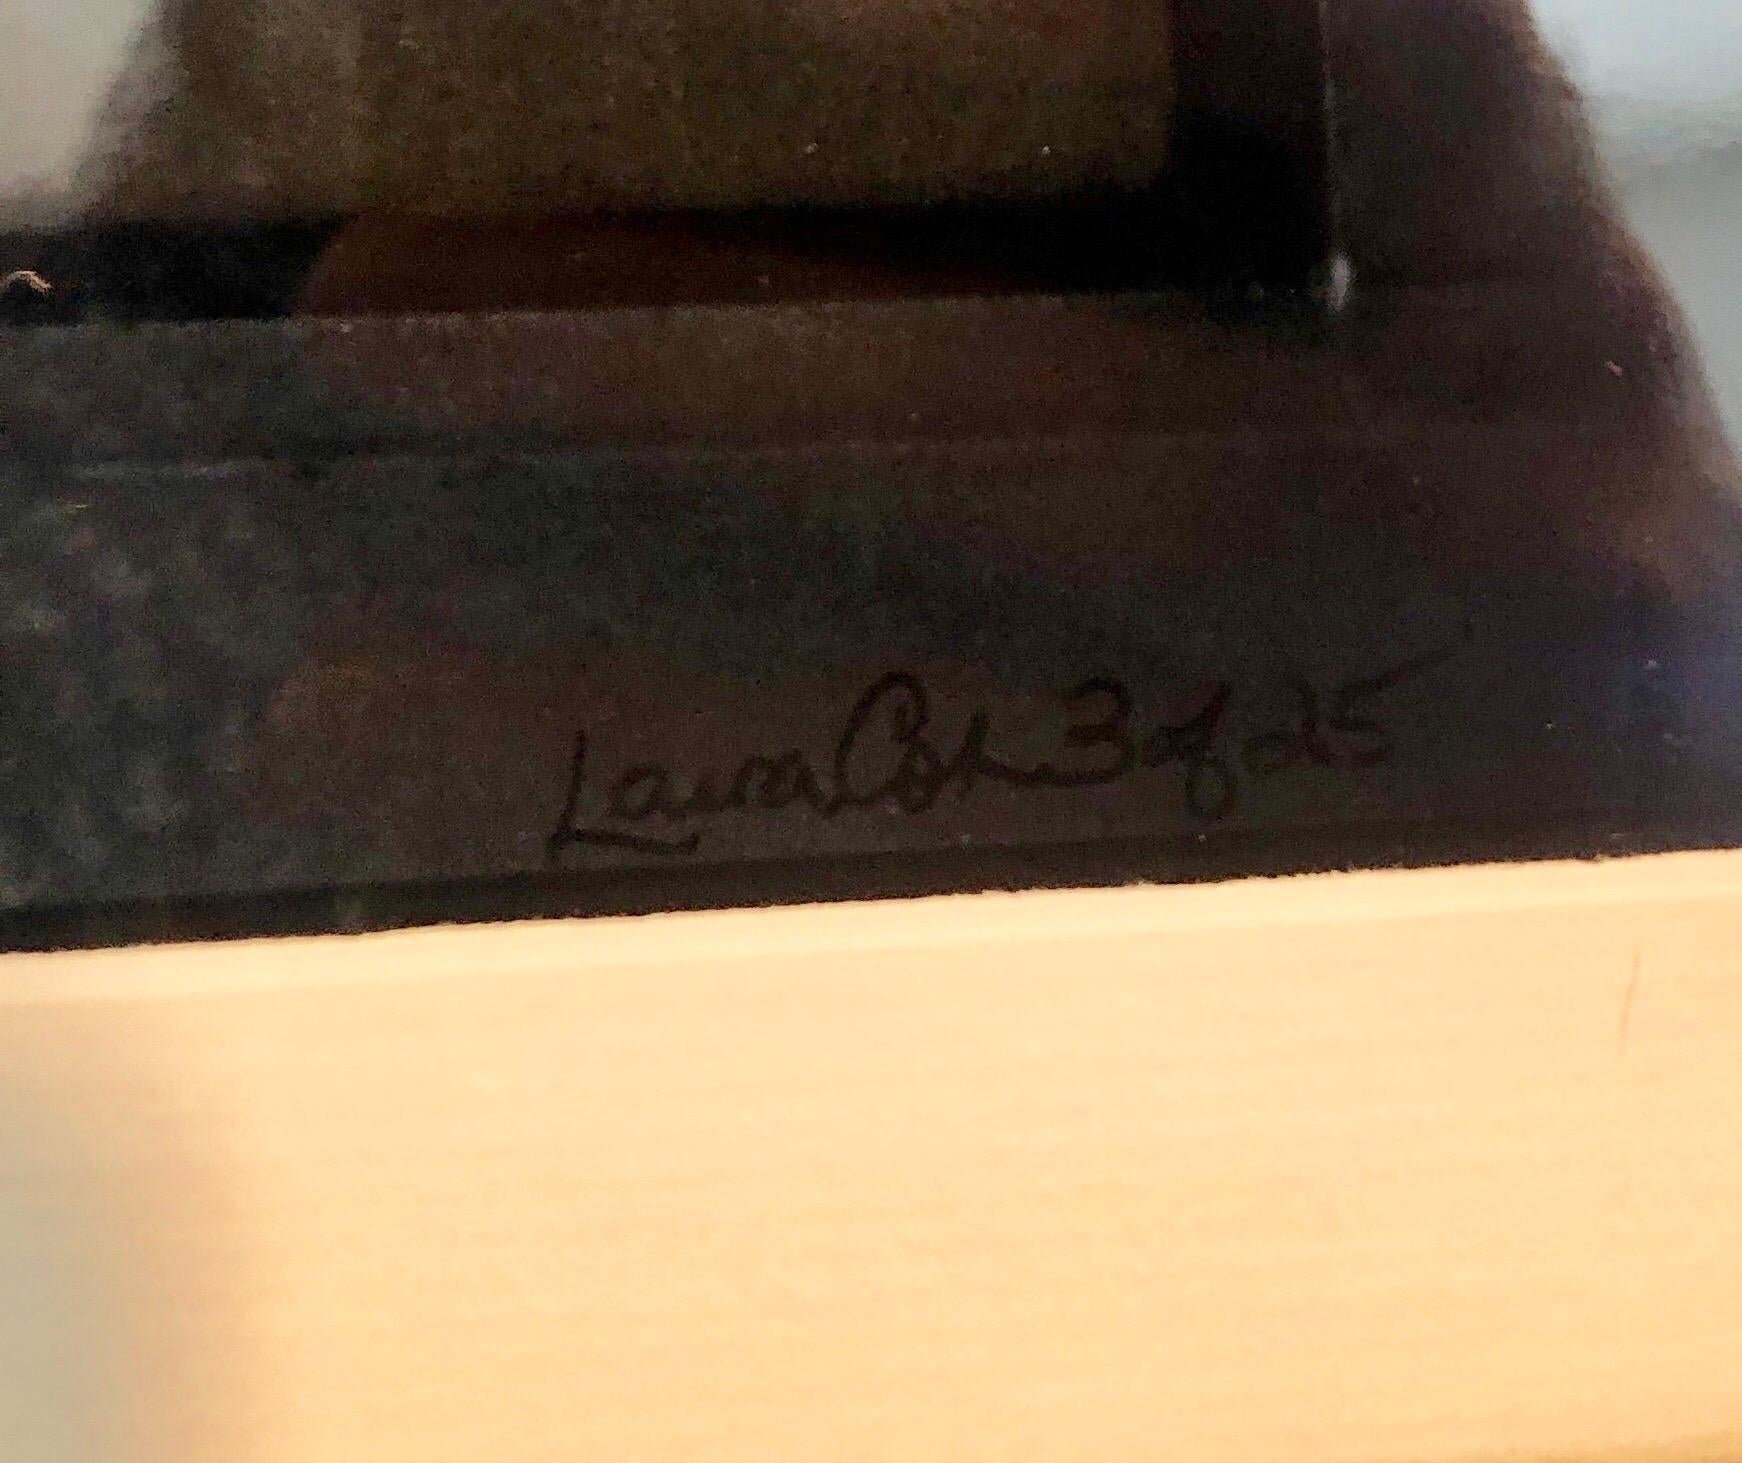 Farbfotografie, 2007, auf der Rückseite signiert, datiert und nummeriert 3 von 25.
14 x 11 Zoll (Blatt), 20 1/7 x 16 1/2 Zoll (Rahmen). Es scheint mit Laura Cohen oder Laura Cohn unterzeichnet zu sein.
Mit durchsichtigem Klebeband an der Rückseite